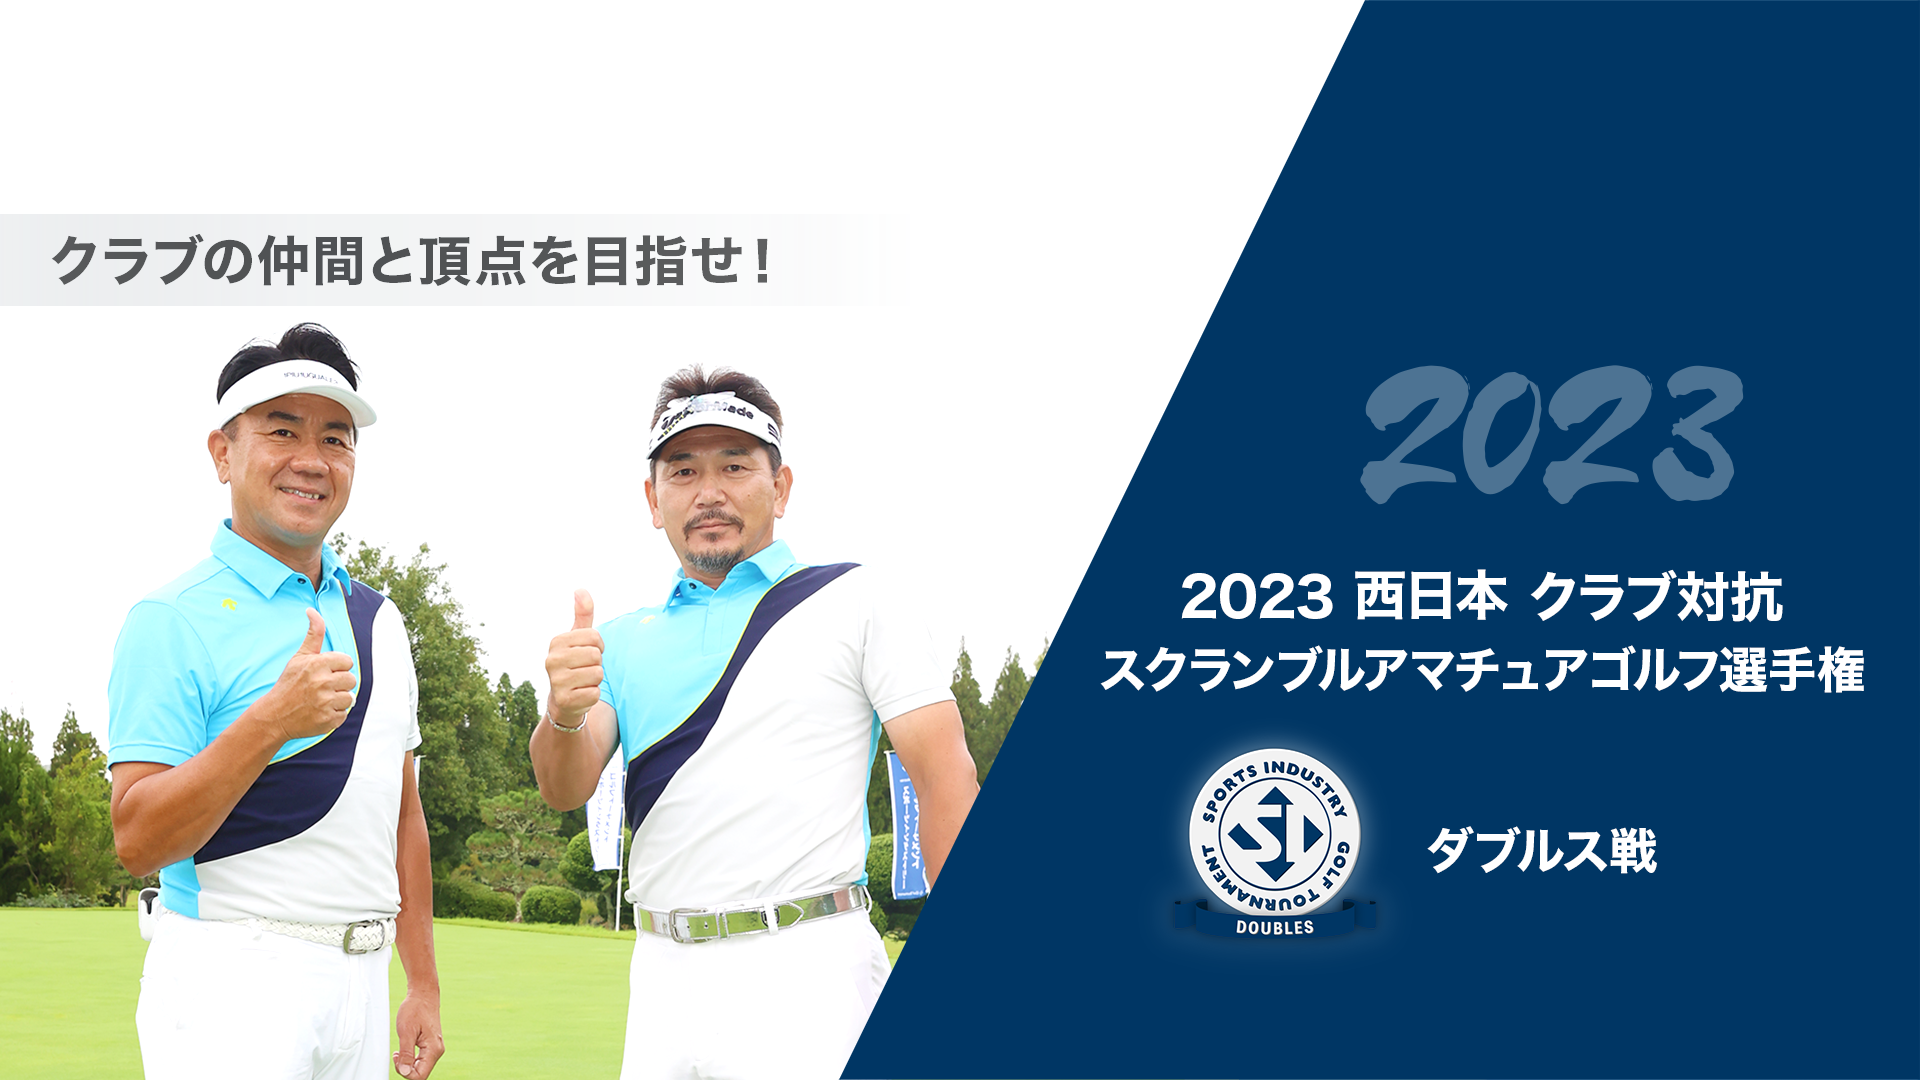 2023西日本クラブ対抗スクランブルアマチュアゴルフ選手権_ダブルス戦